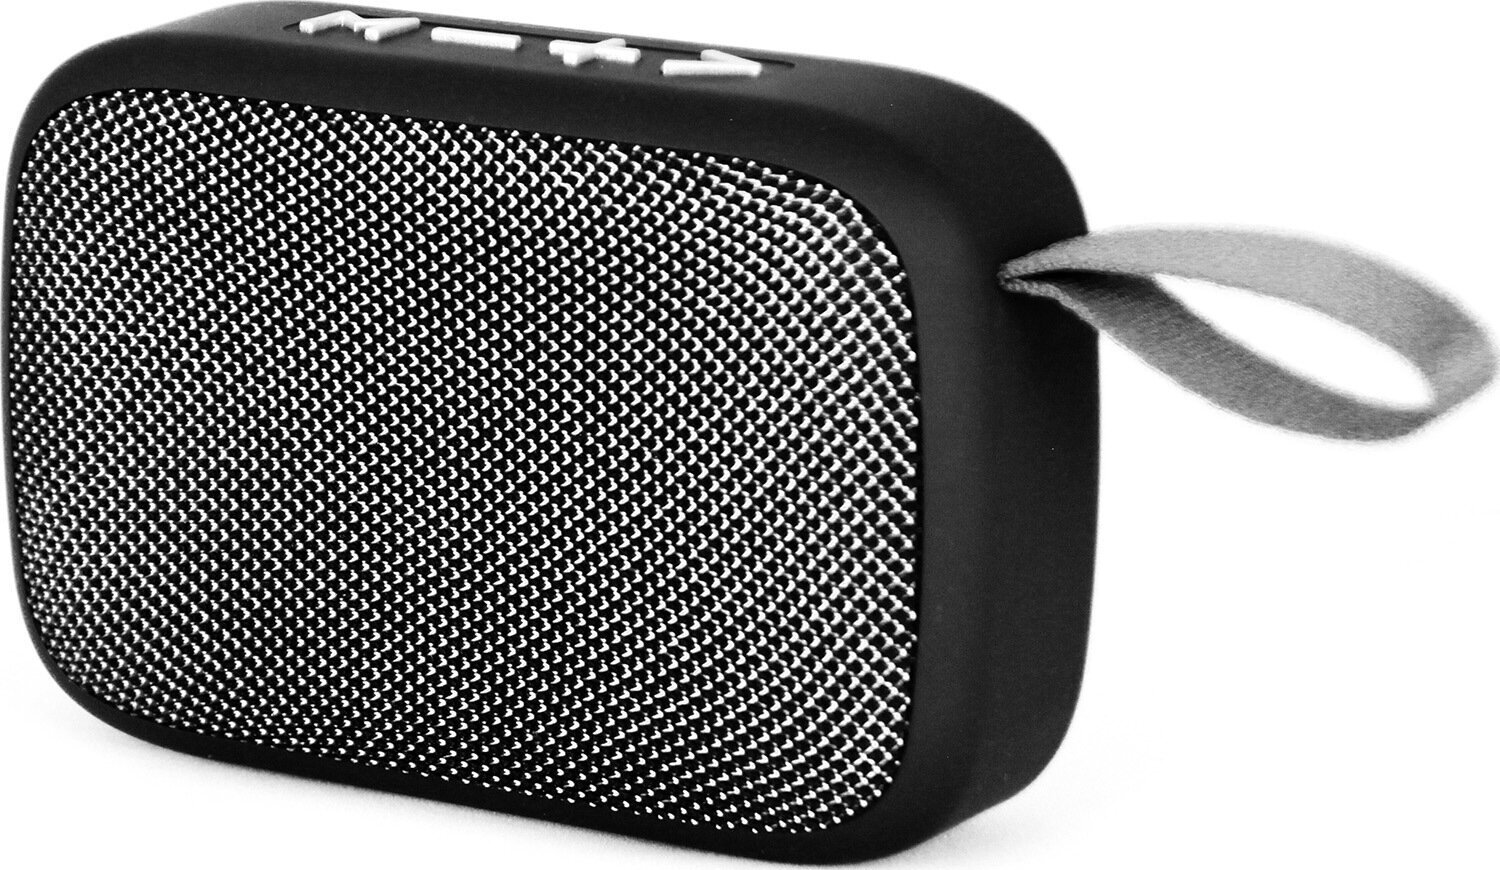 Draagbare luidspreker Media-Tech MT3156 Zwart